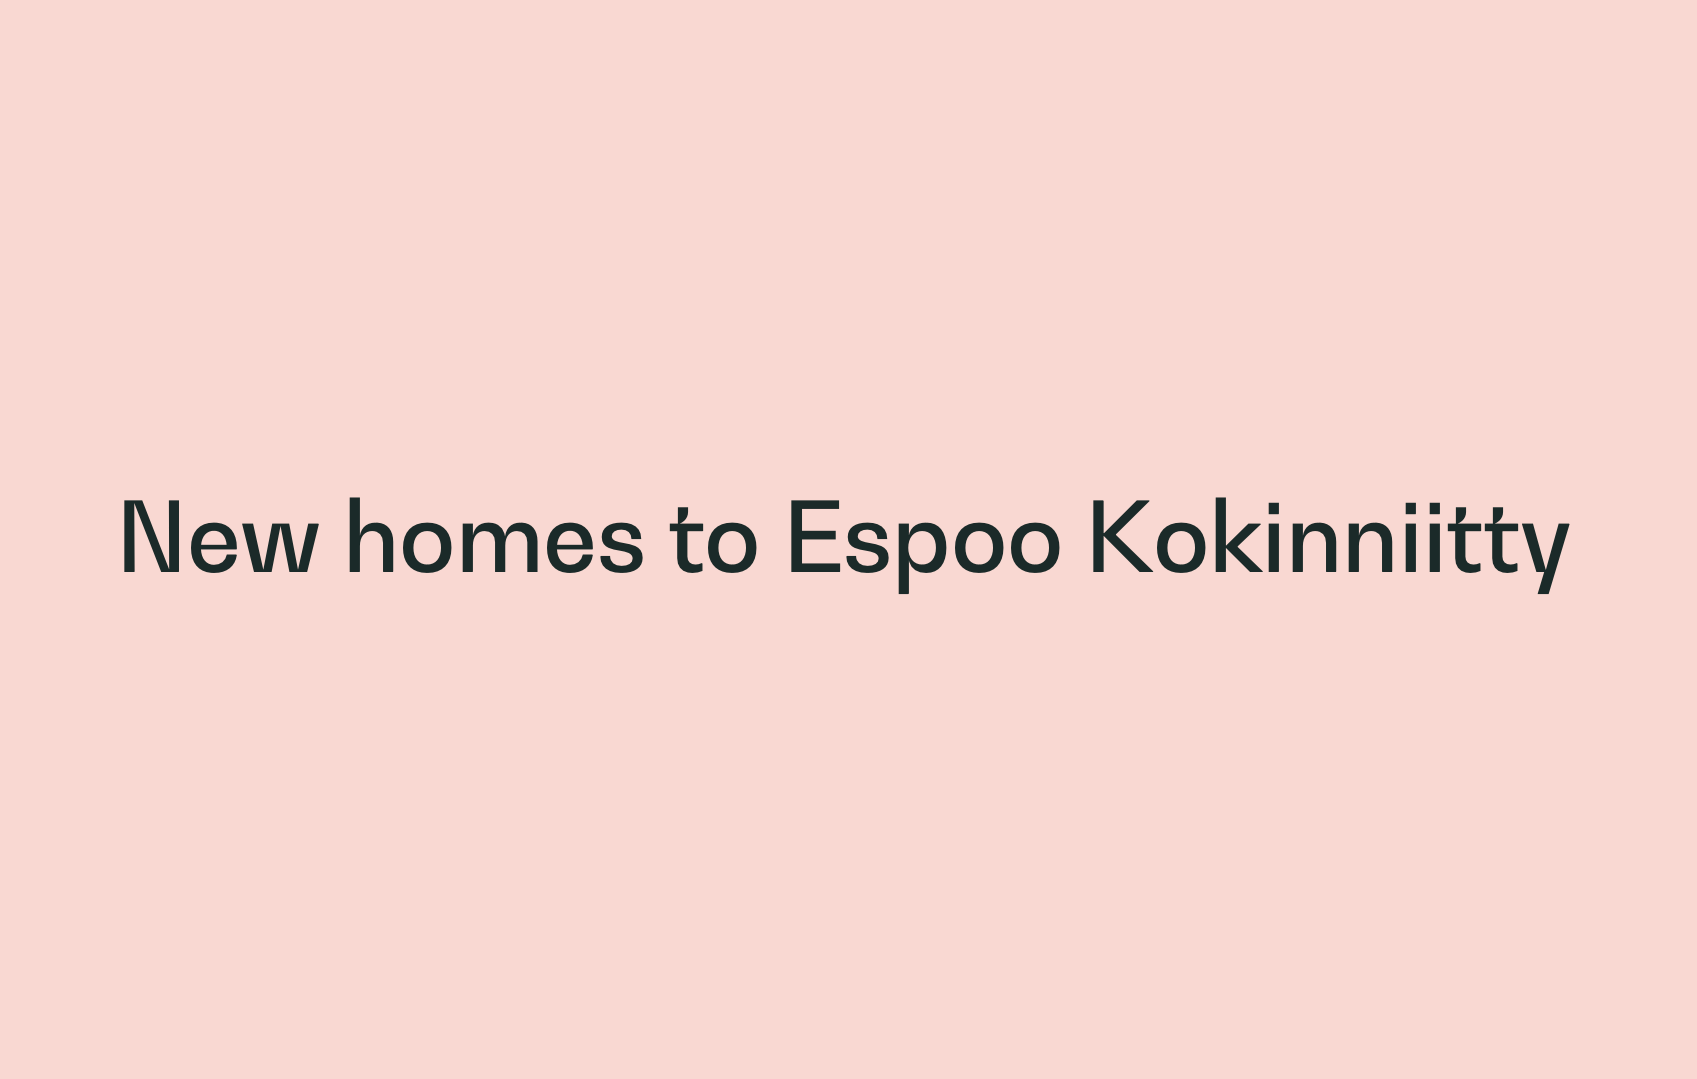 Asuntoyhtymä is building new Joo Koti rental apartments to Espoo Kokinniitty.